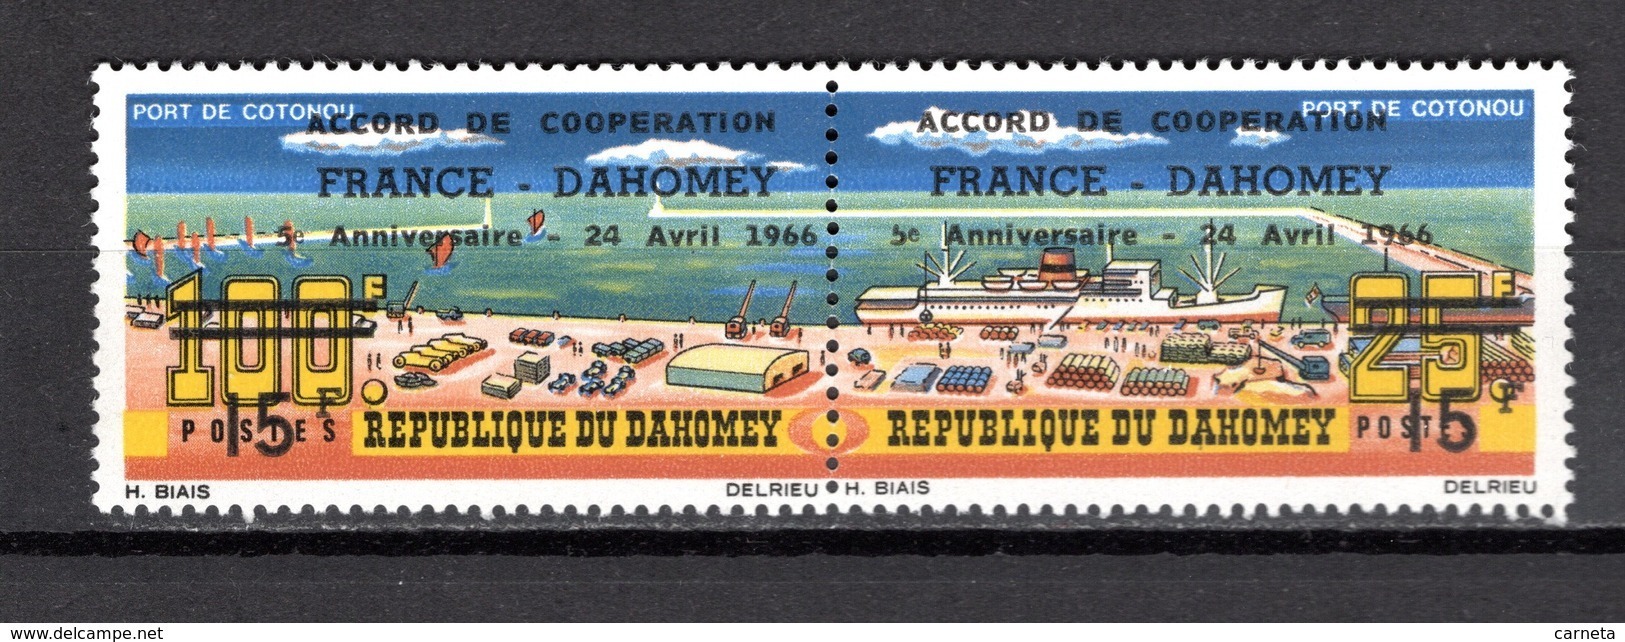 DAHOMEY  N° 241A  NEUF SANS CHARNIERE  COTE  2.50€  PORT  BATEAUX  COOPERATION AVEC LA FRANCE - Bénin – Dahomey (1960-...)